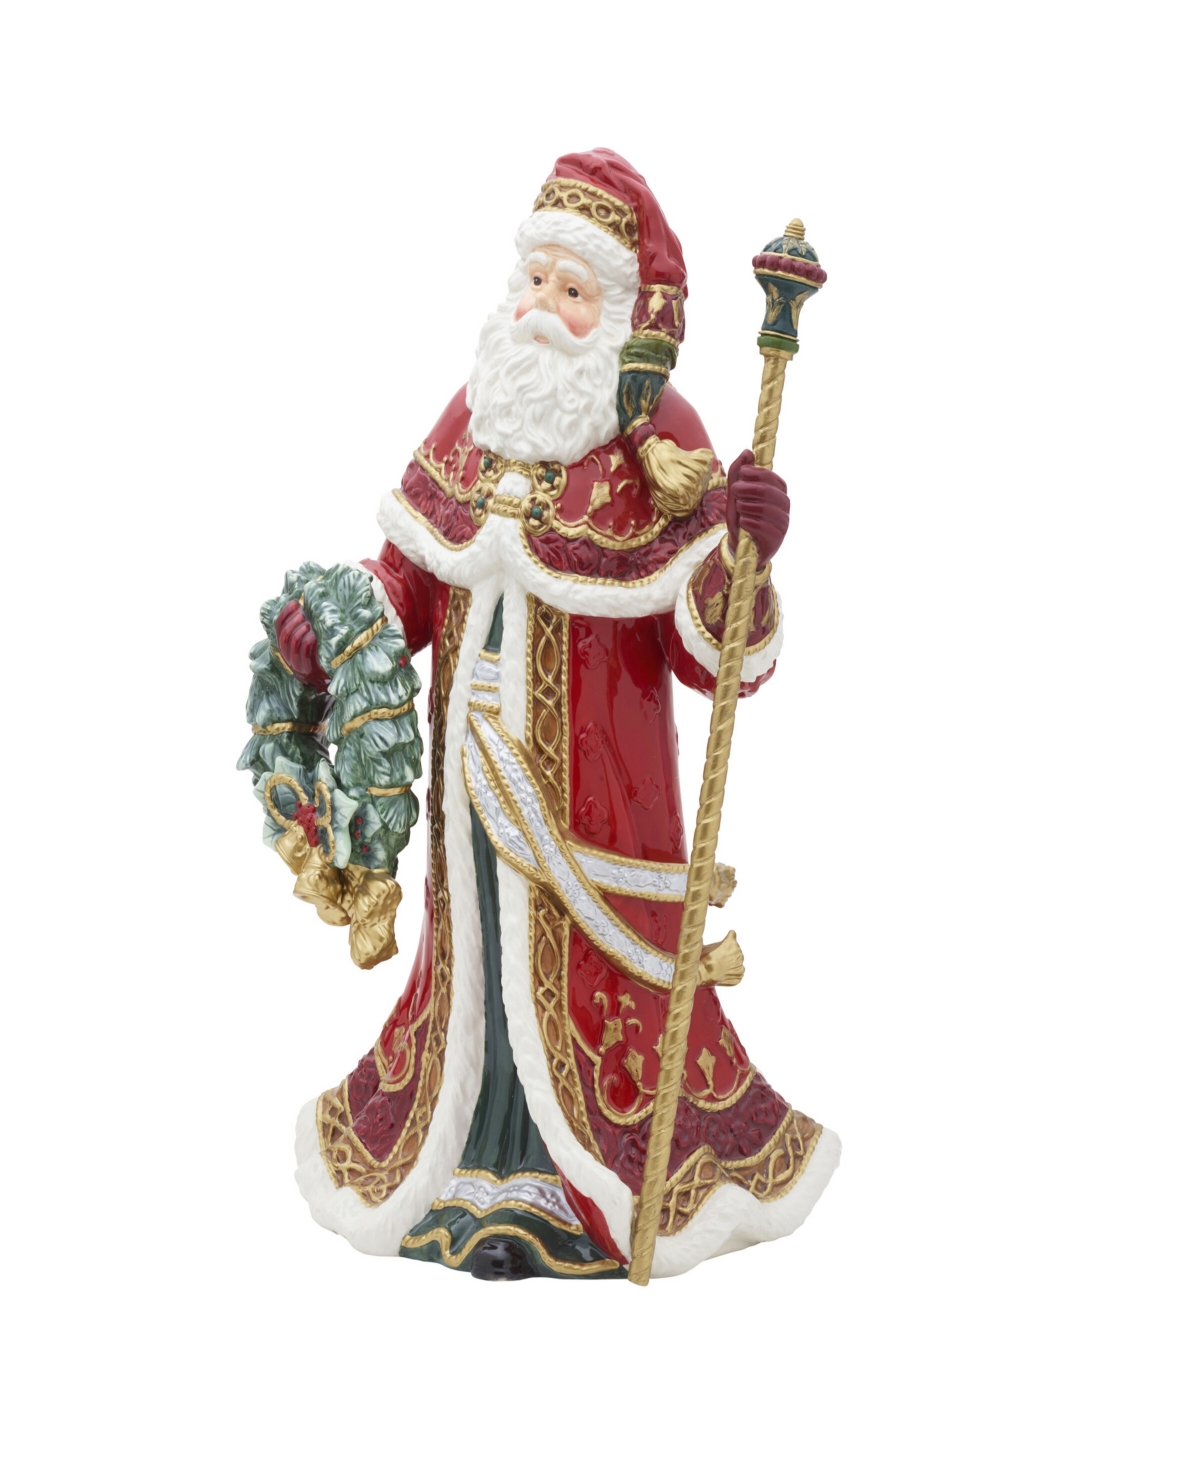 Noel Holiday Grand Santa Figurine, 19.25-in - Red